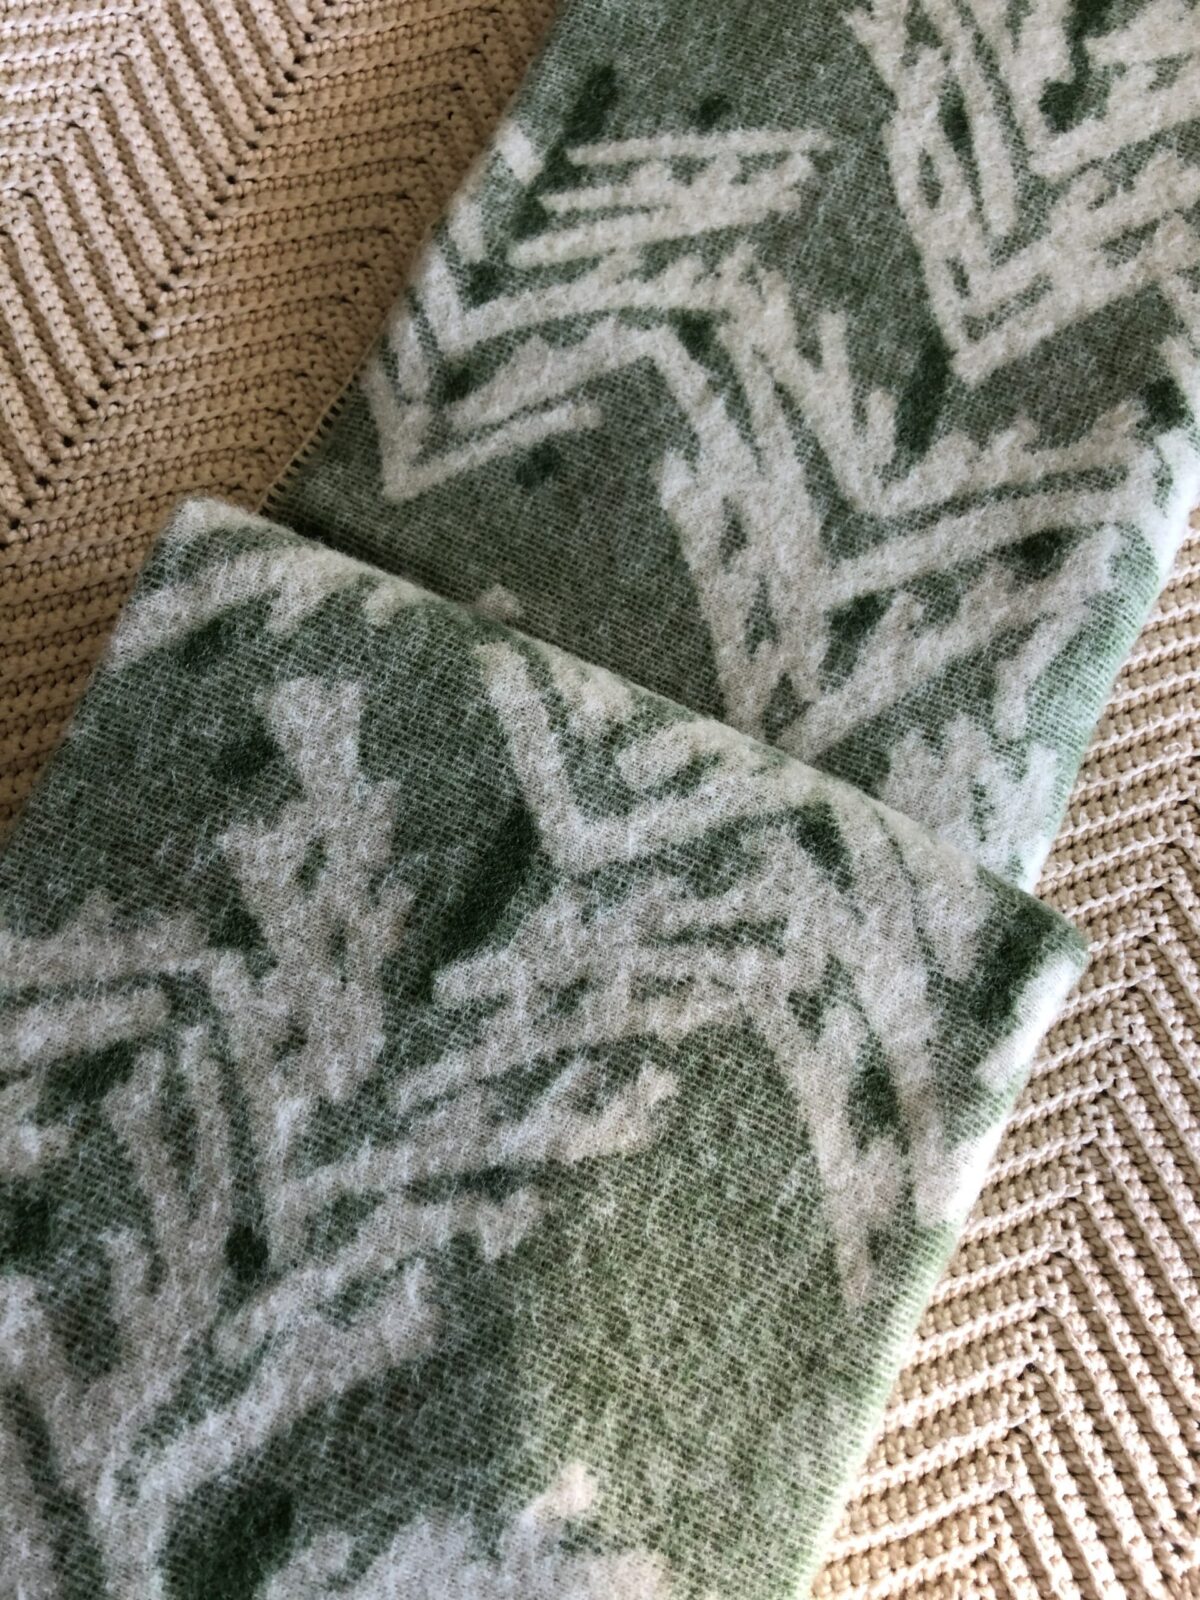 Lapuan Kankurit wool blankets Finland